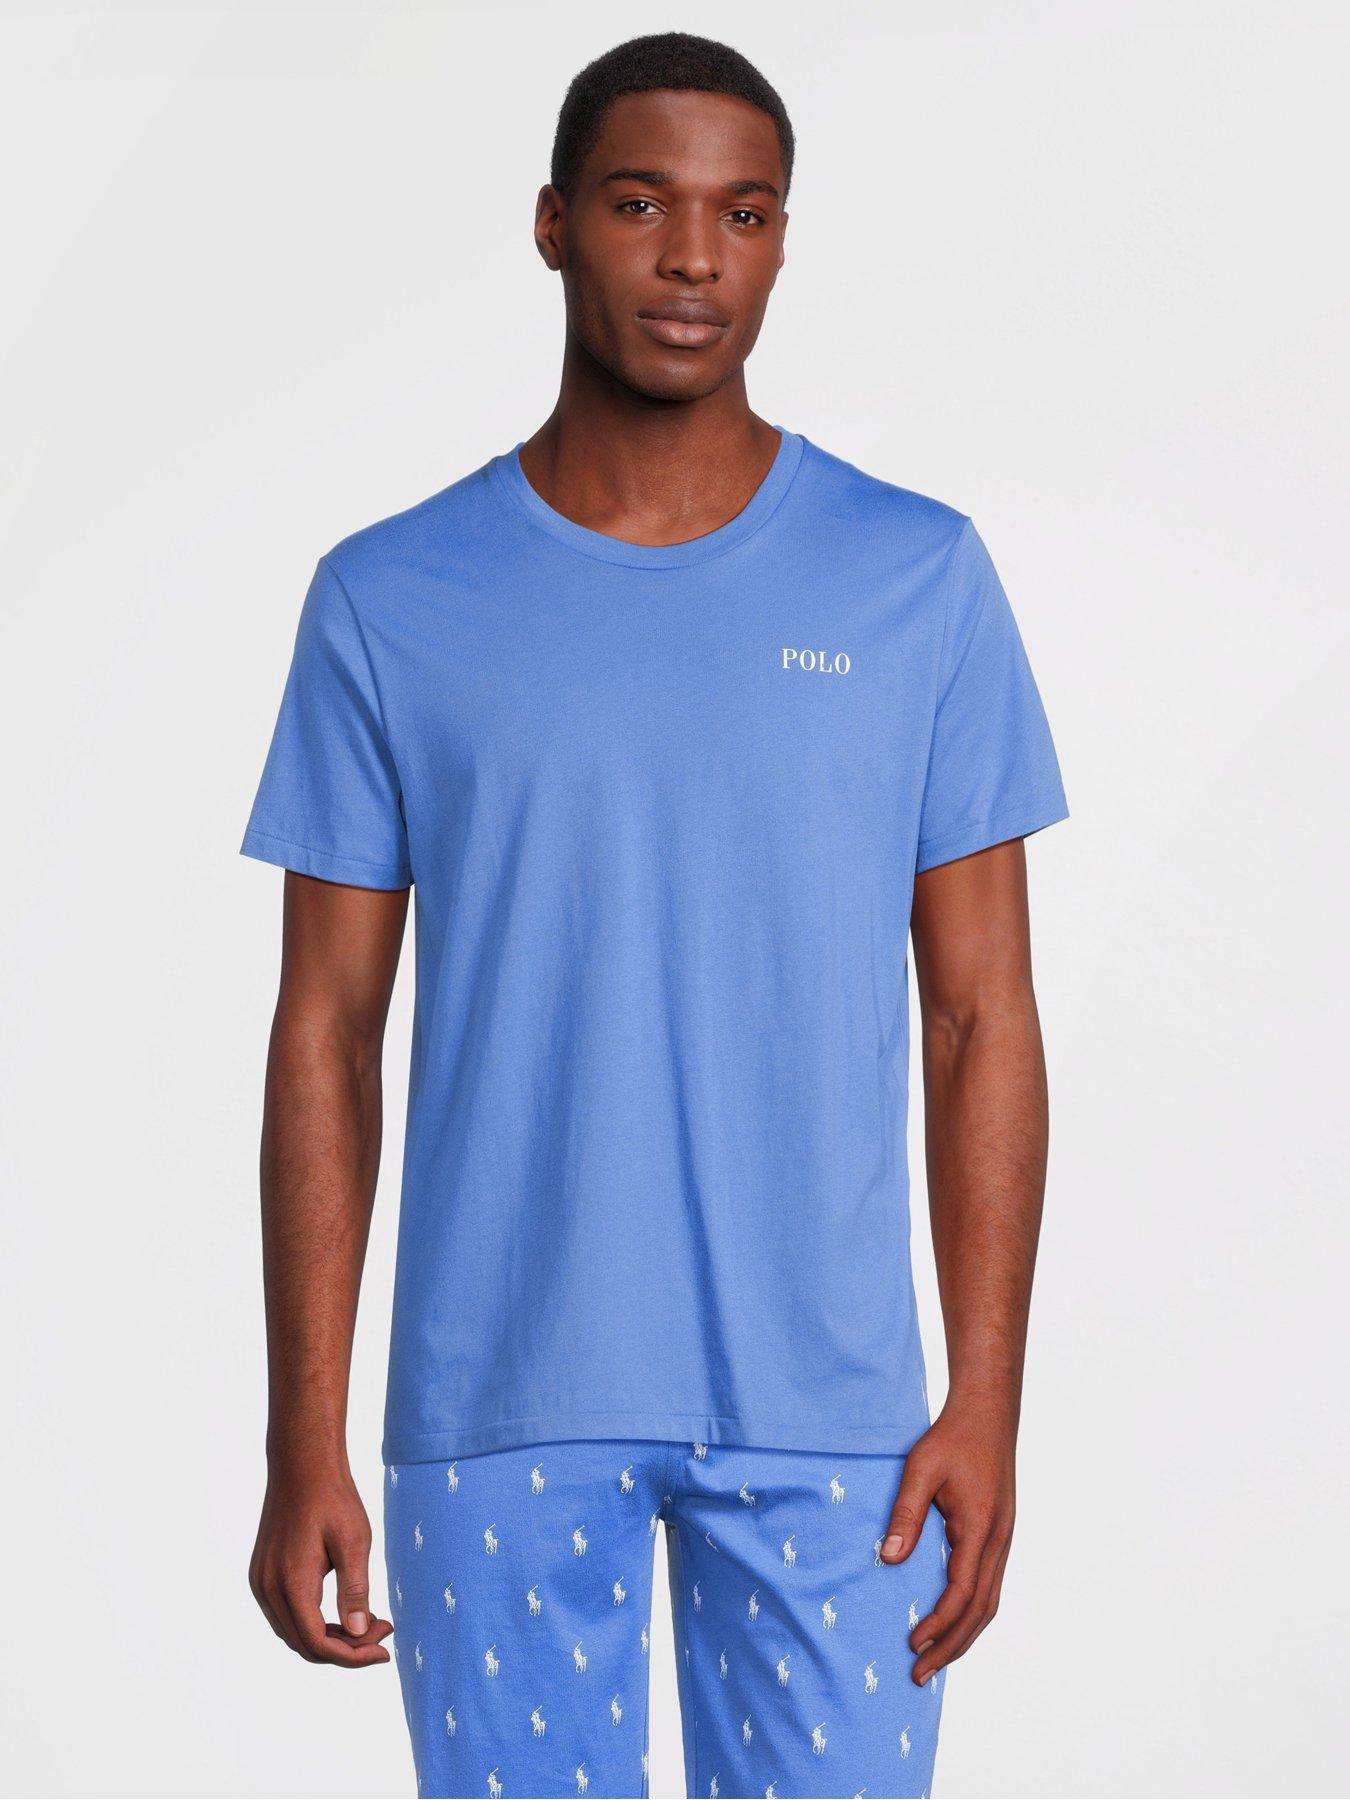 Polo Ralph Lauren: Intimates + Sleepwear, Ralph Lauren, Ralph Lauren  Corporation, nightwear